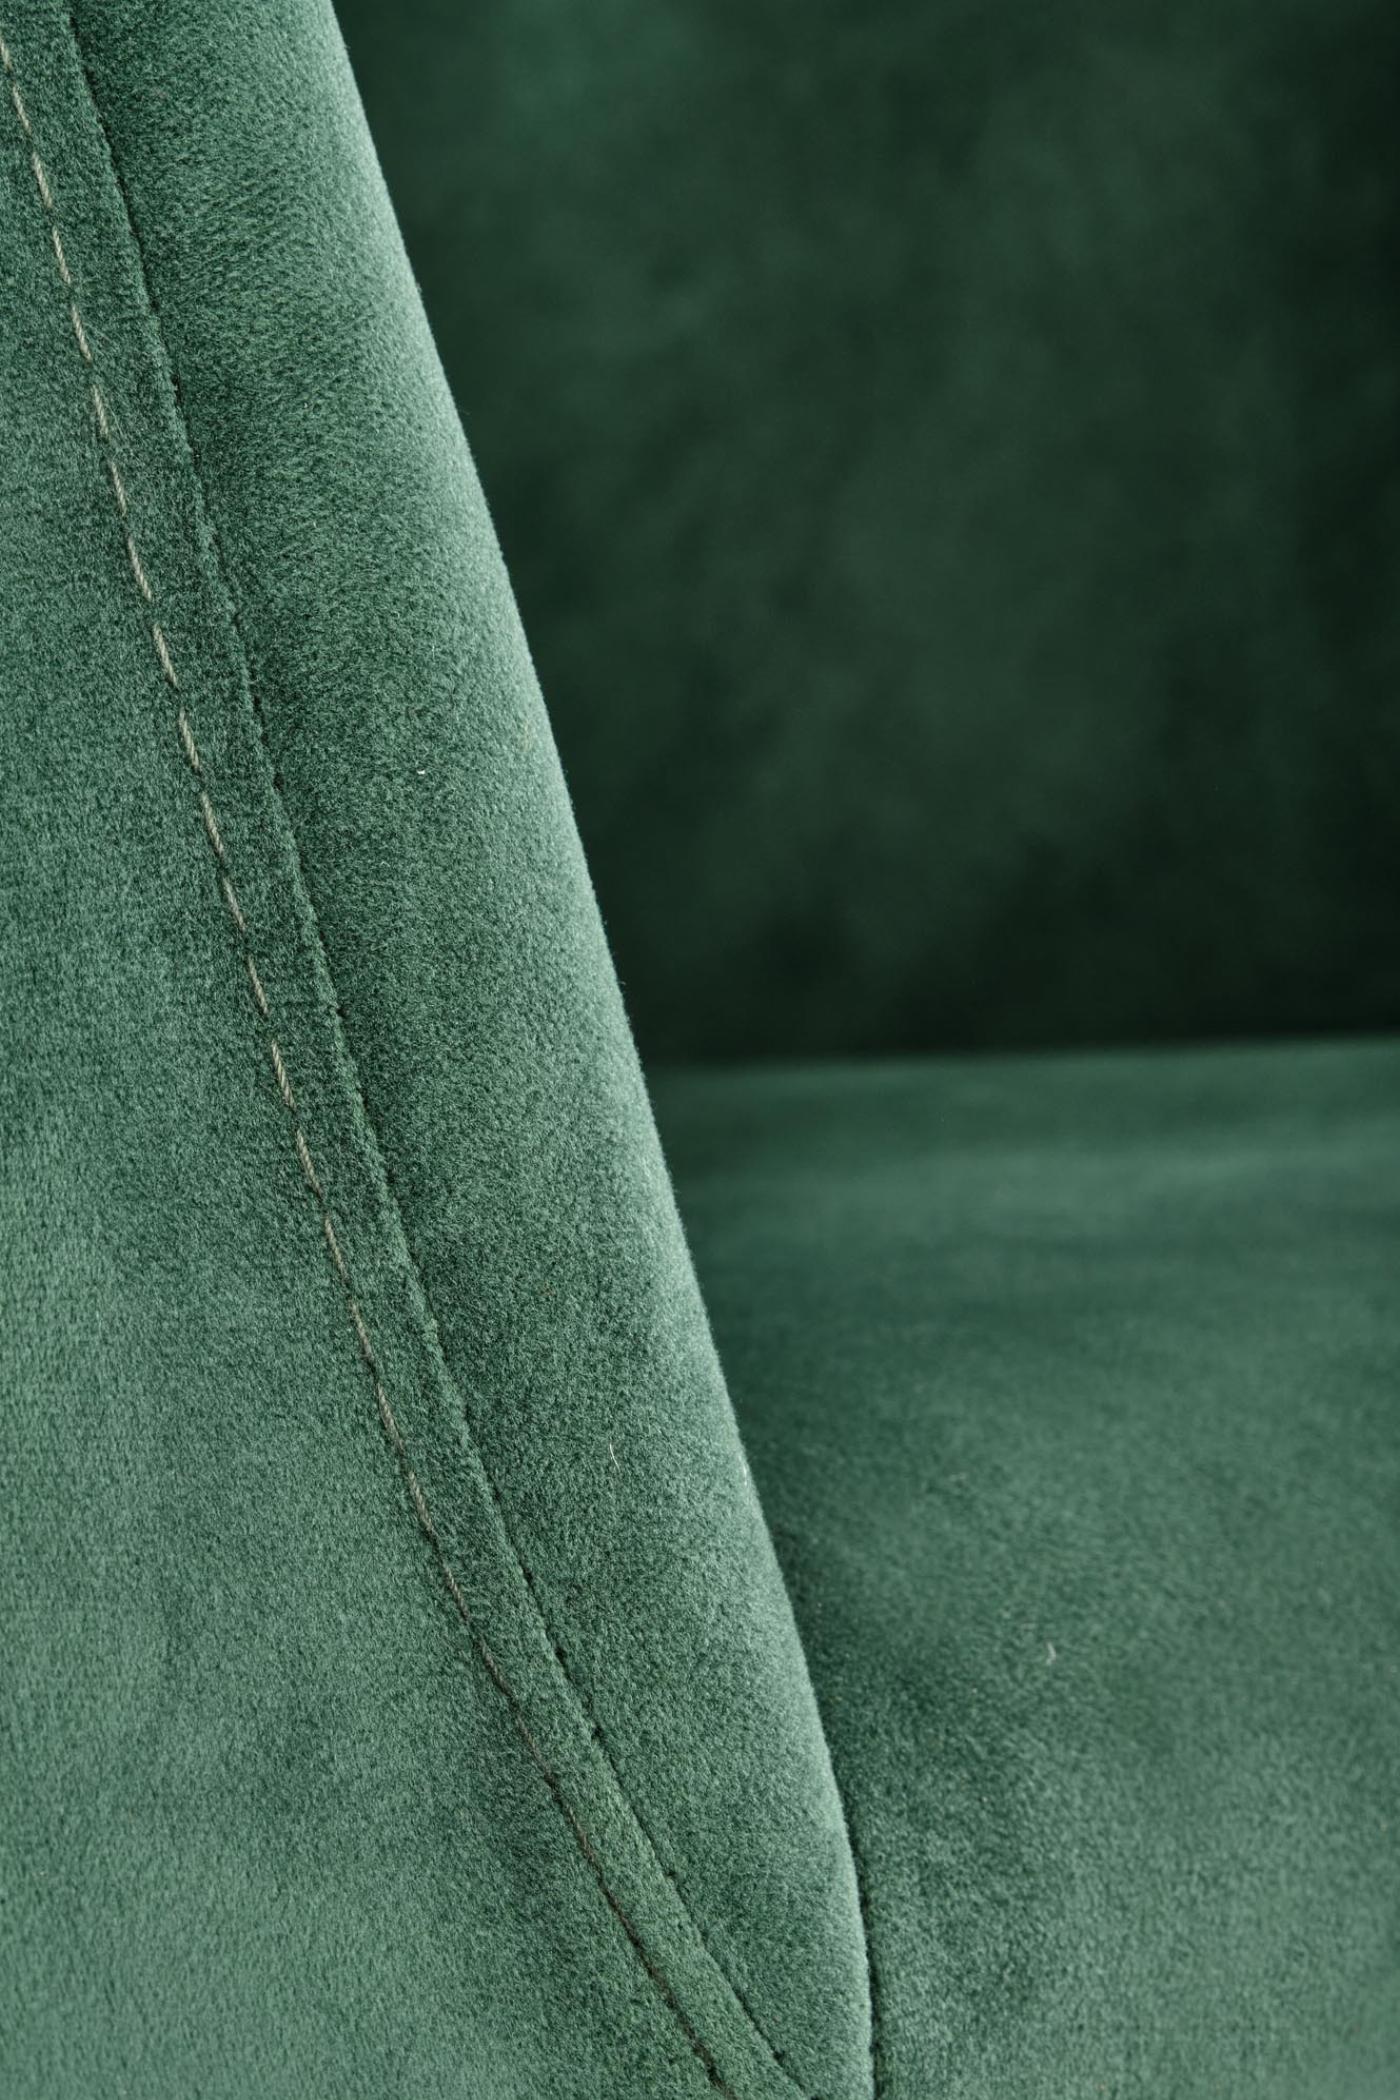 K421 krzesło nogi - czarne, siedzisko - ciemny zielony